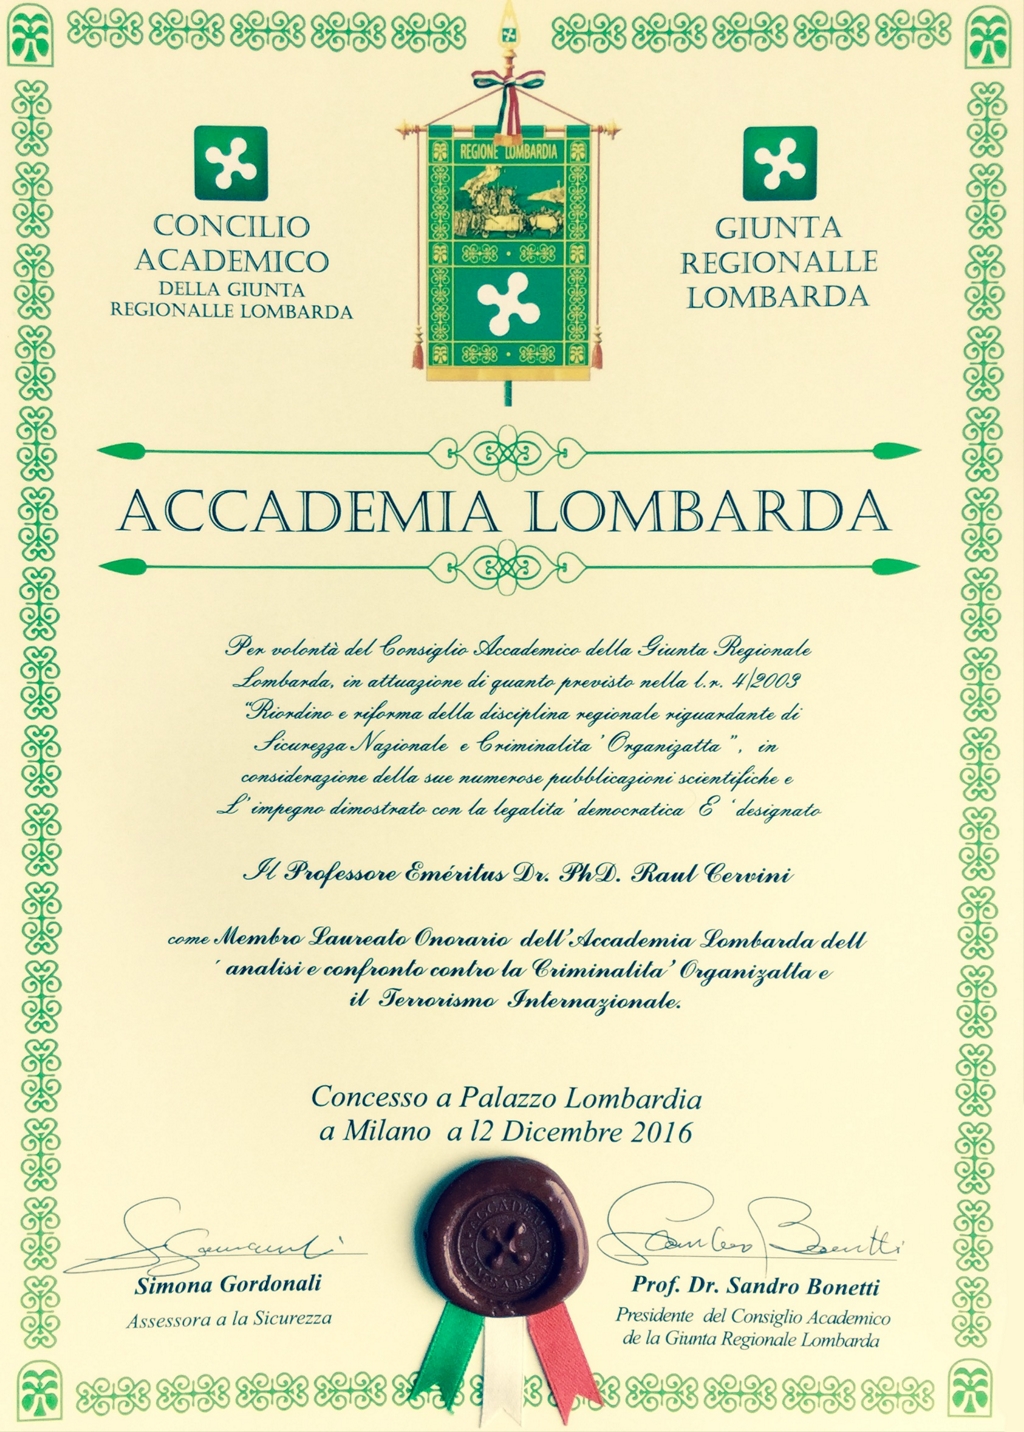 Accademia Lombarda